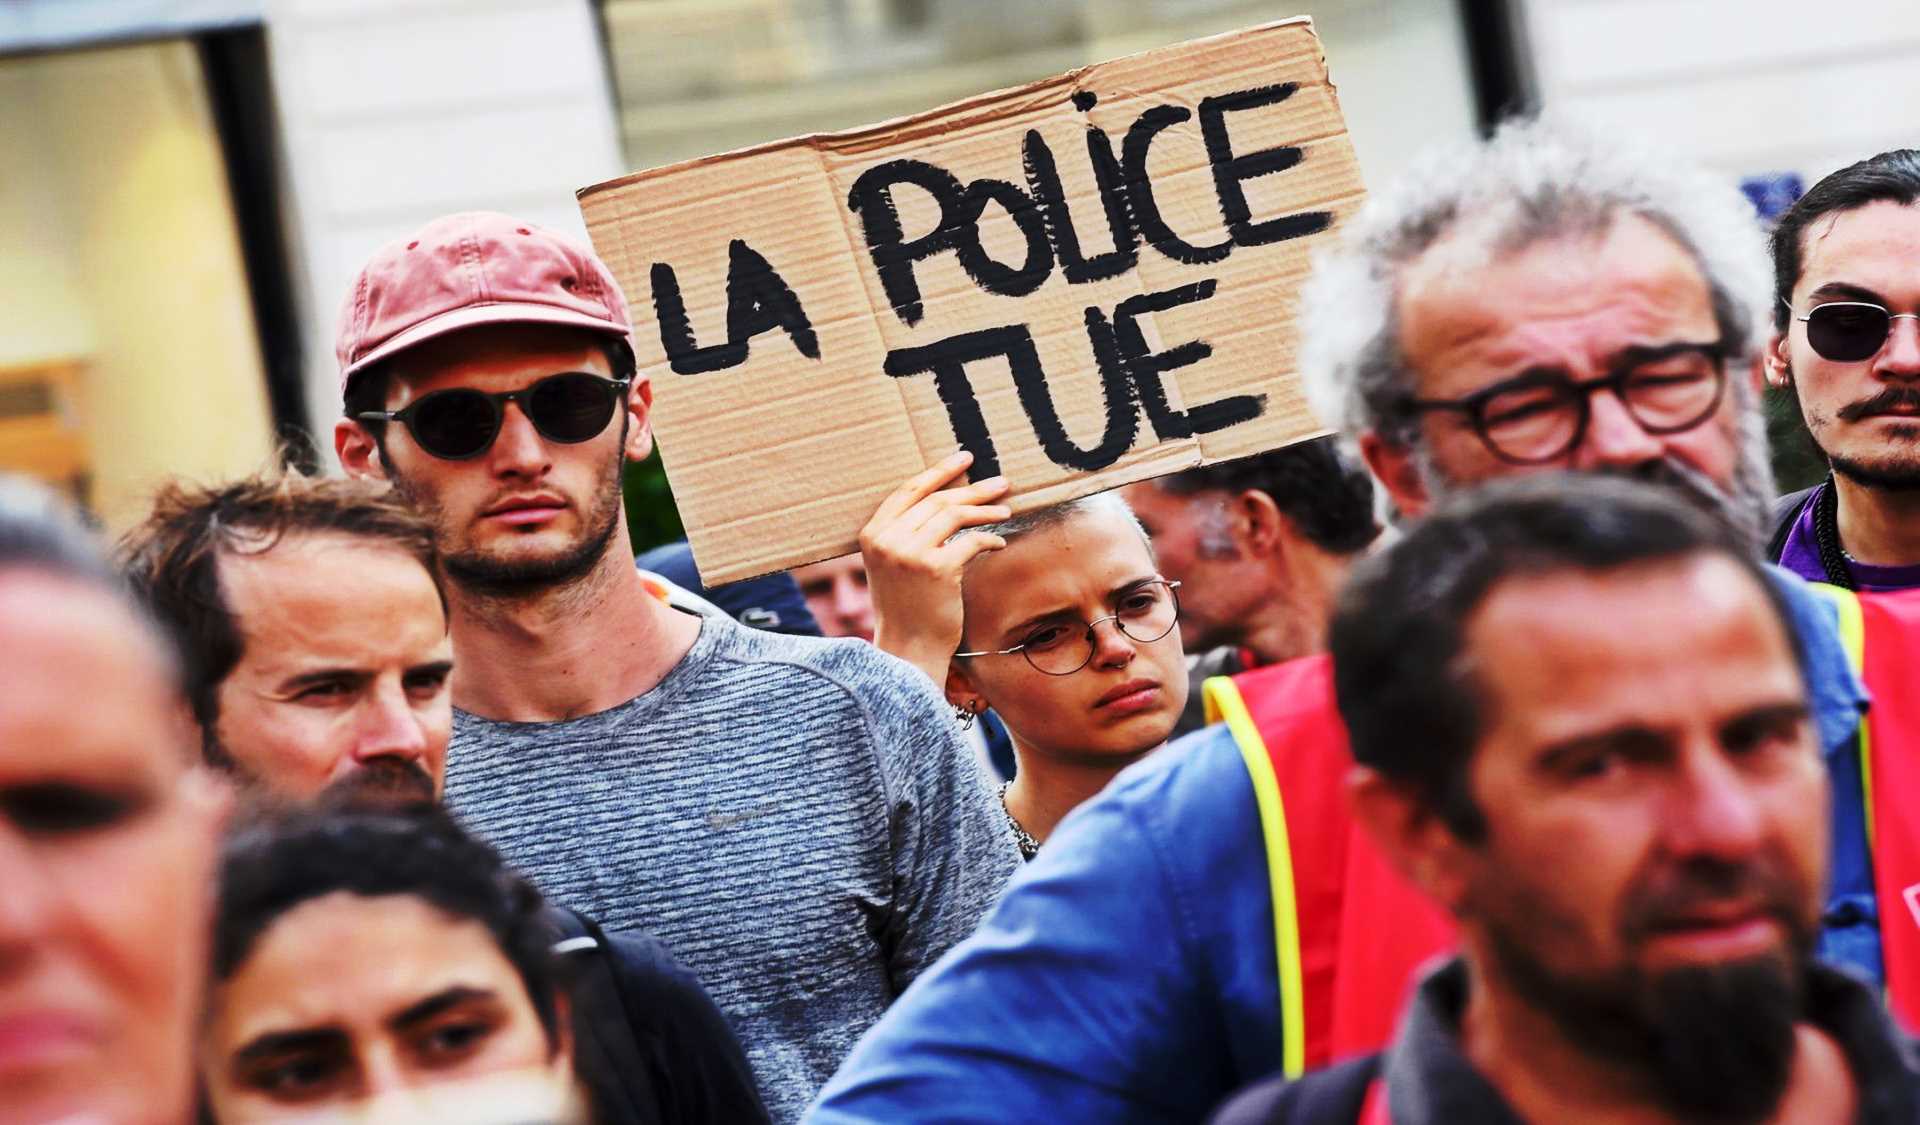 Lettre à mes amis français en marge des émeutes urbaines consécutives à l’assassinat de l’adolescent Naël lors d’un contrôle policier